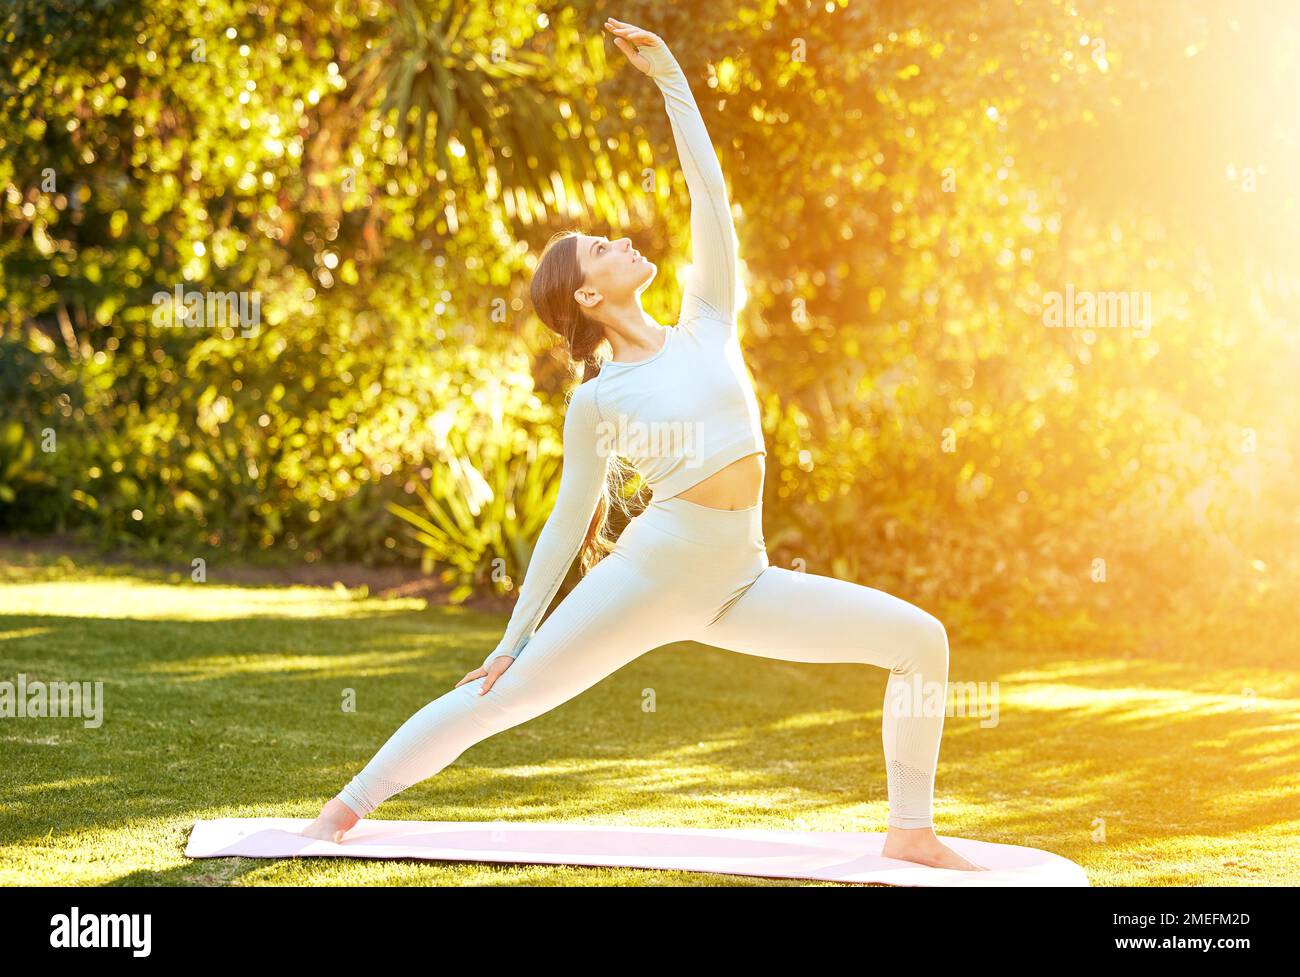 Yoga, Naturtraining und Stretching für Sport, Fitness im Freien oder körperliche Gesundheit. Gartensonne, Frieden oder geistige Gesundheit Stockfoto